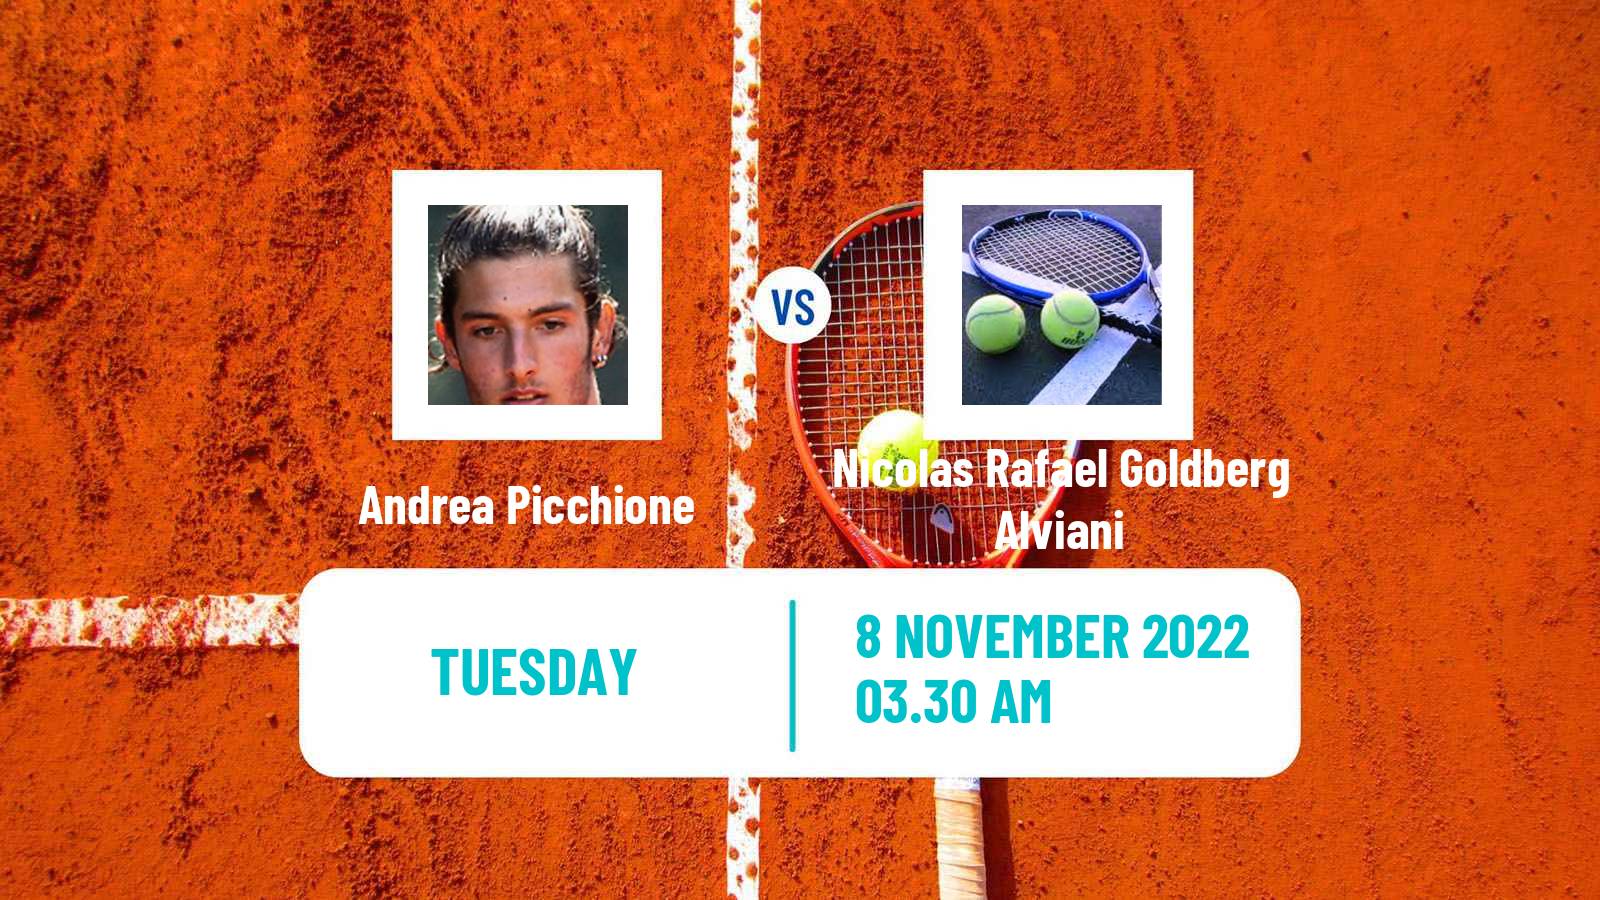 Tennis ITF Tournaments Andrea Picchione - Nicolas Rafael Goldberg Alviani